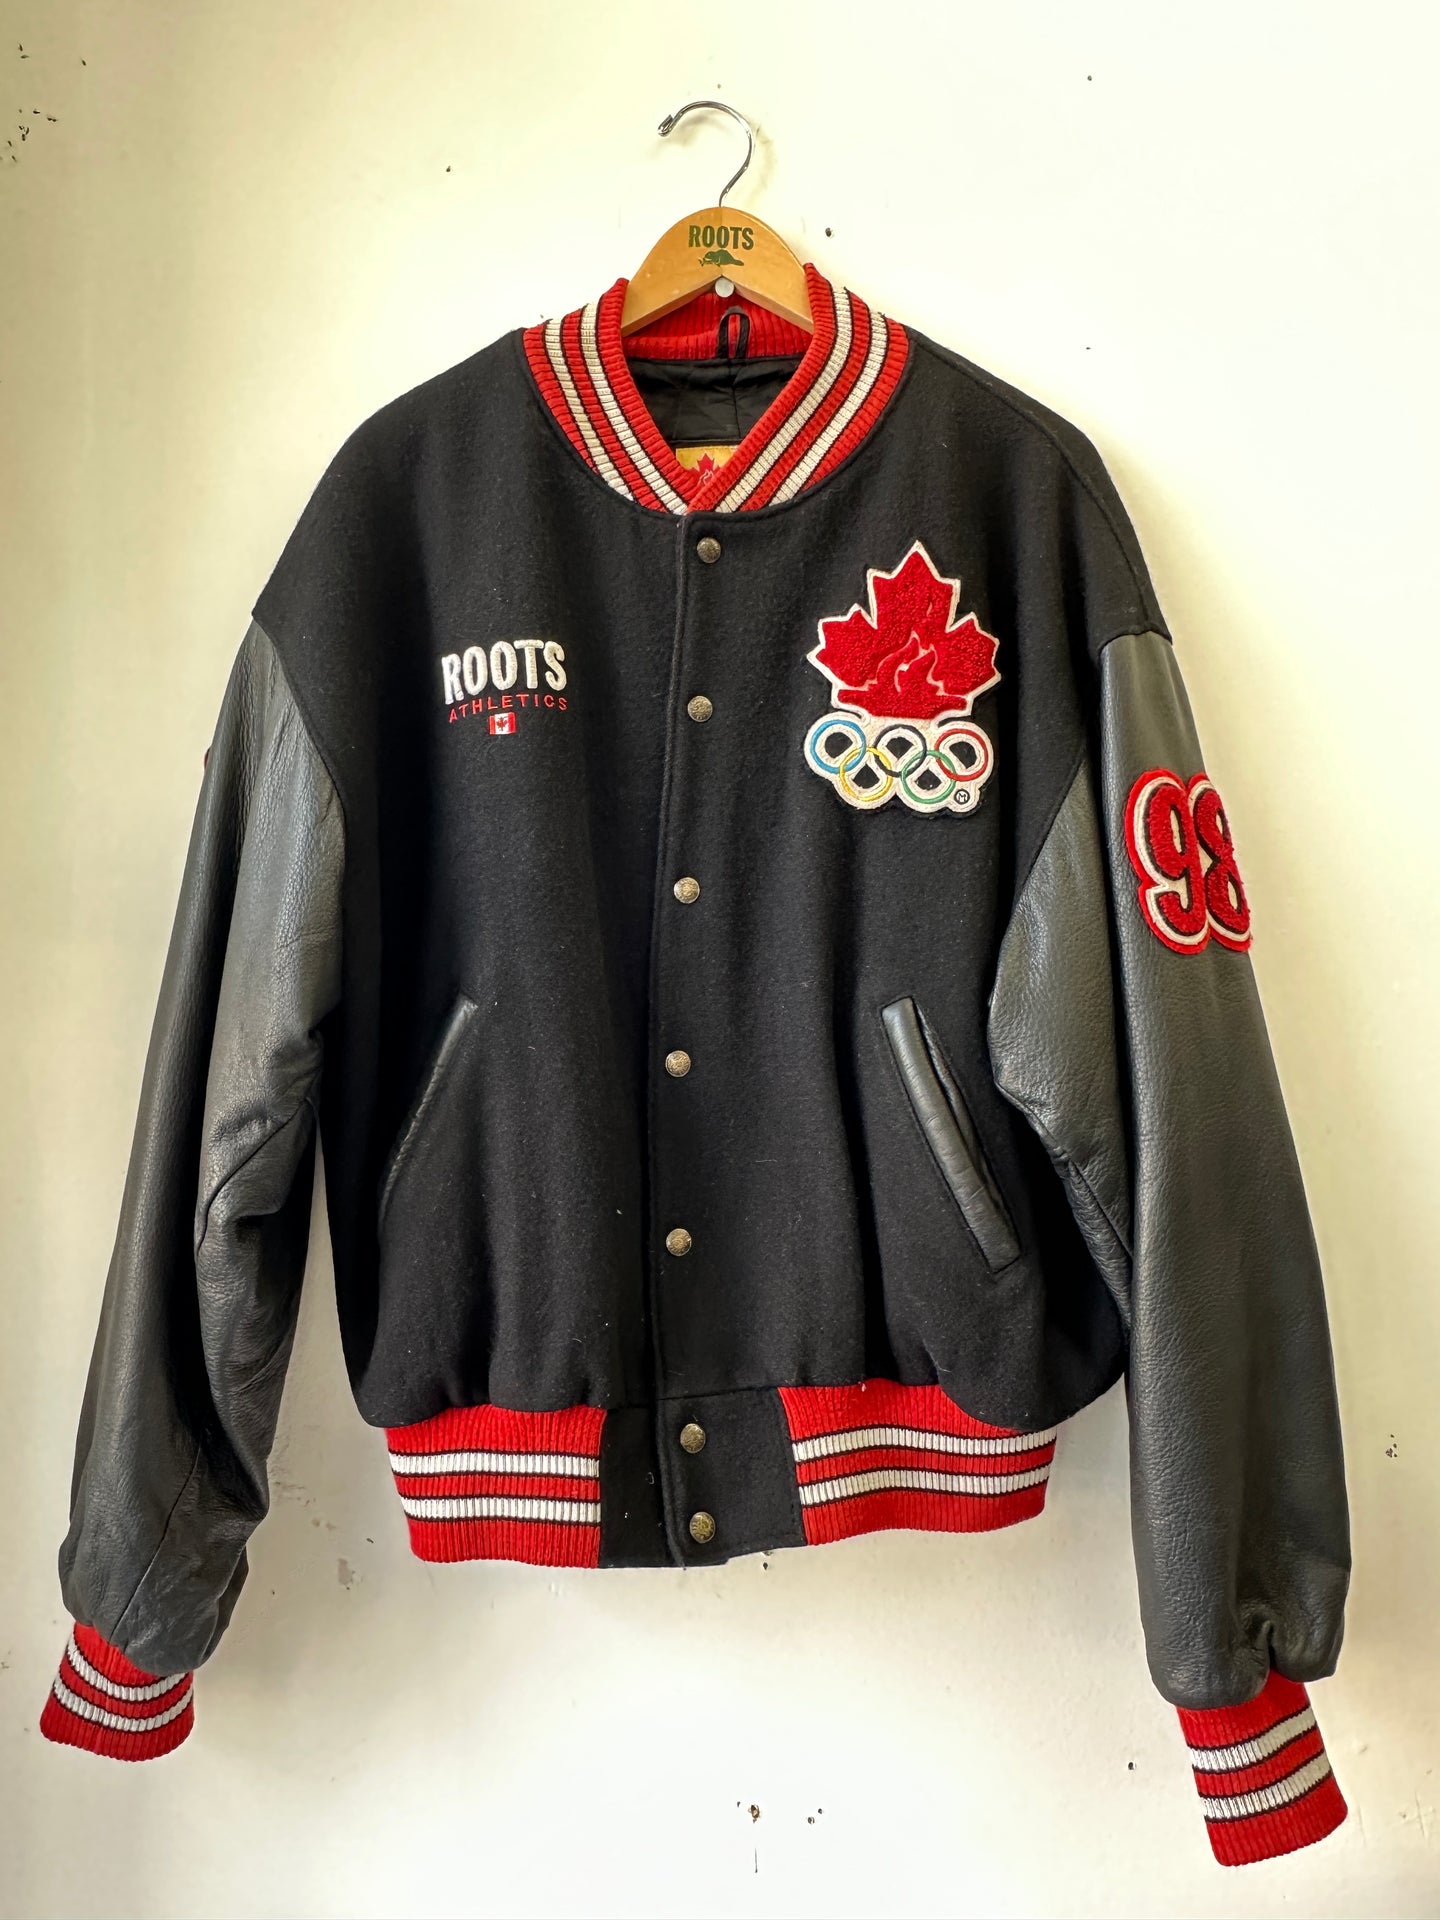 1998 Roots Nagano Olympics Awards Jacket